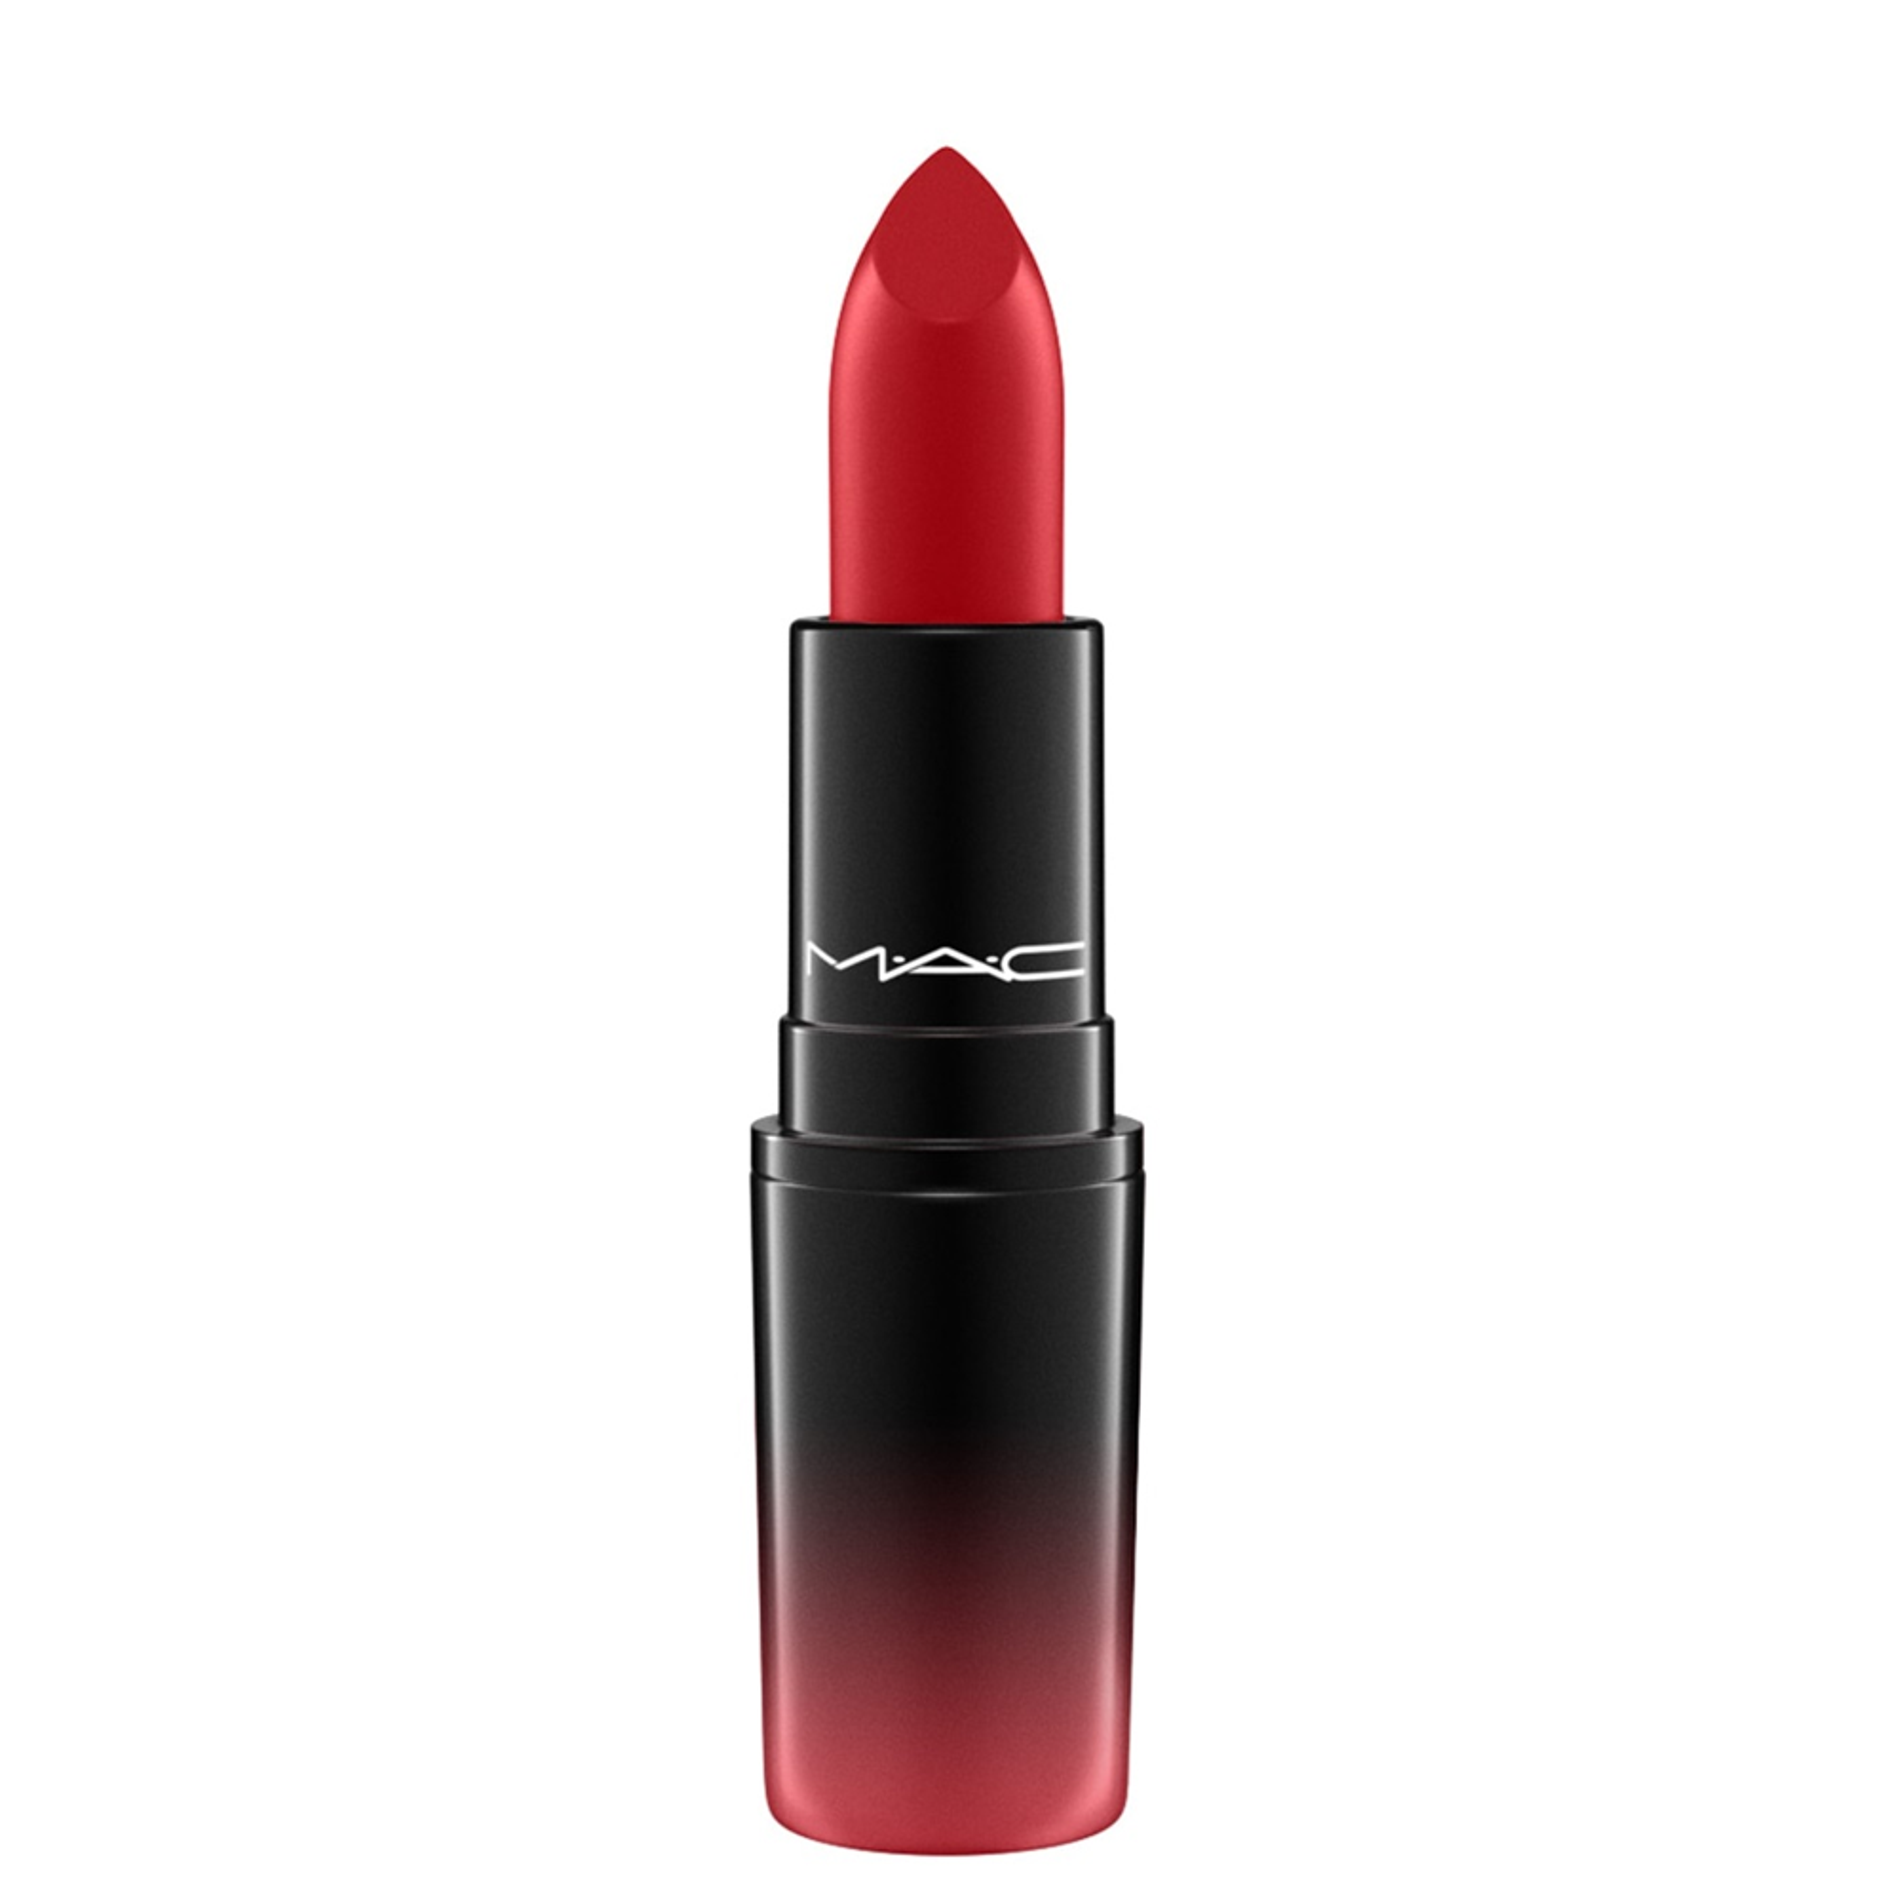 son-thoi-mac-love-me-lipstick-3g-23